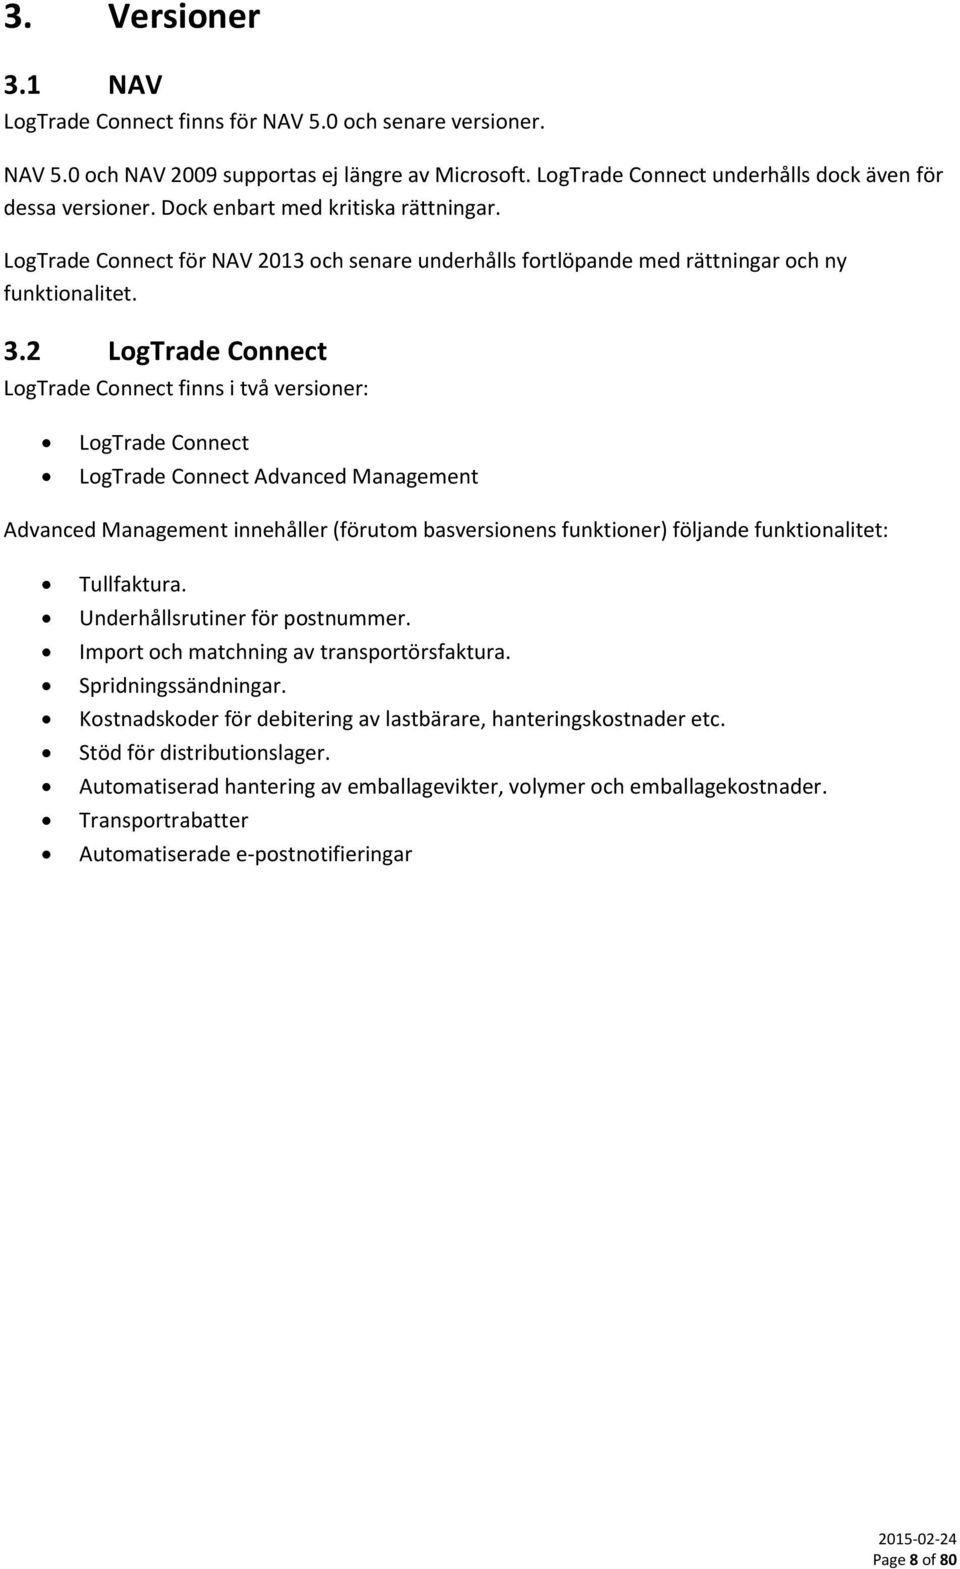 2 LogTrade Connect LogTrade Connect finns i två versioner: LogTrade Connect LogTrade Connect Advanced Management Advanced Management innehåller (förutom basversionens funktioner) följande